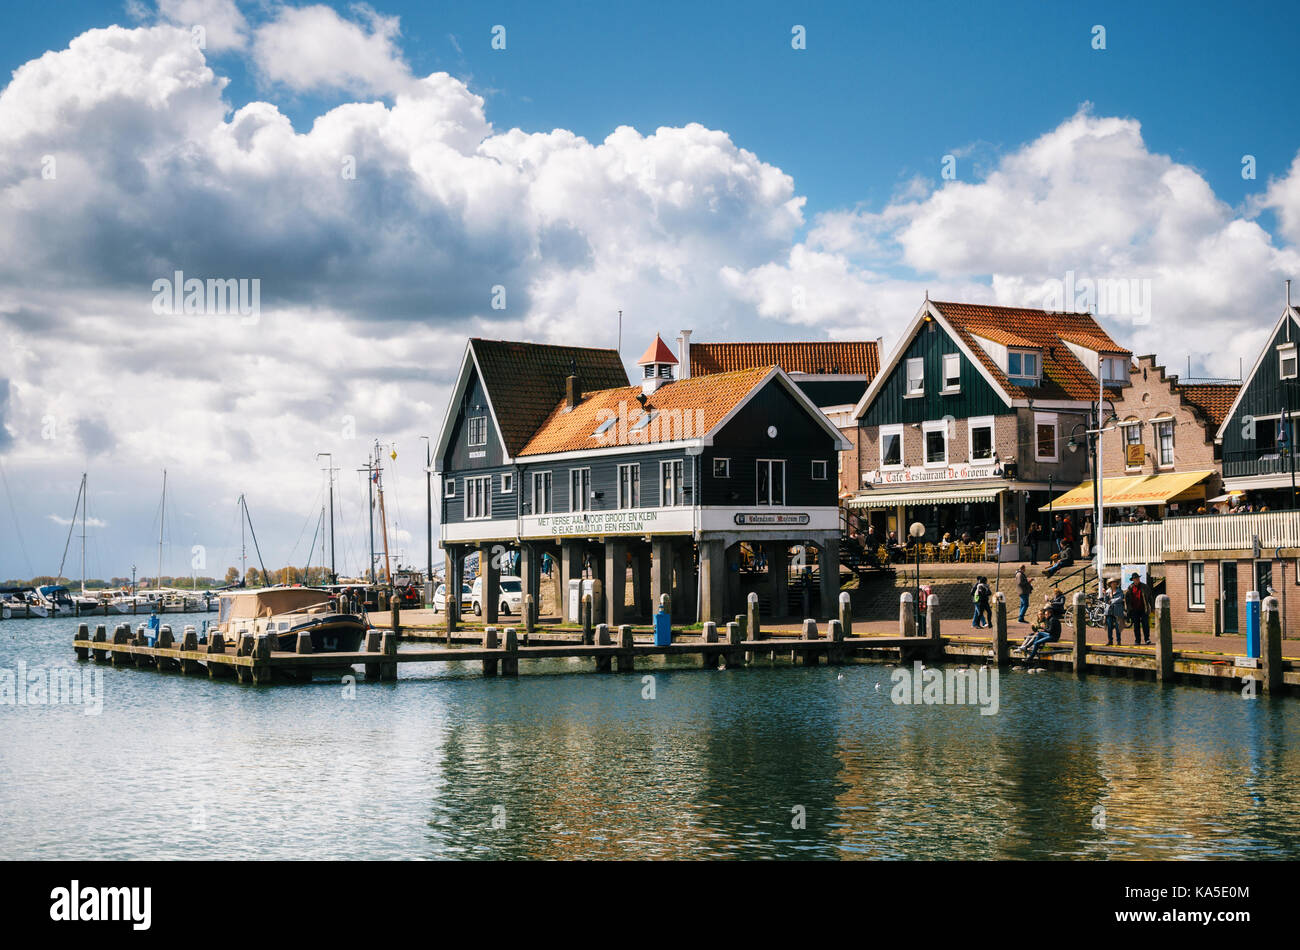 Volendam, Holanda - 26 April, 2017: típicos tradicionales casas sobre pilotes en la costa de un pueblo pesquero holandés Volendam, Holanda. Foto de stock